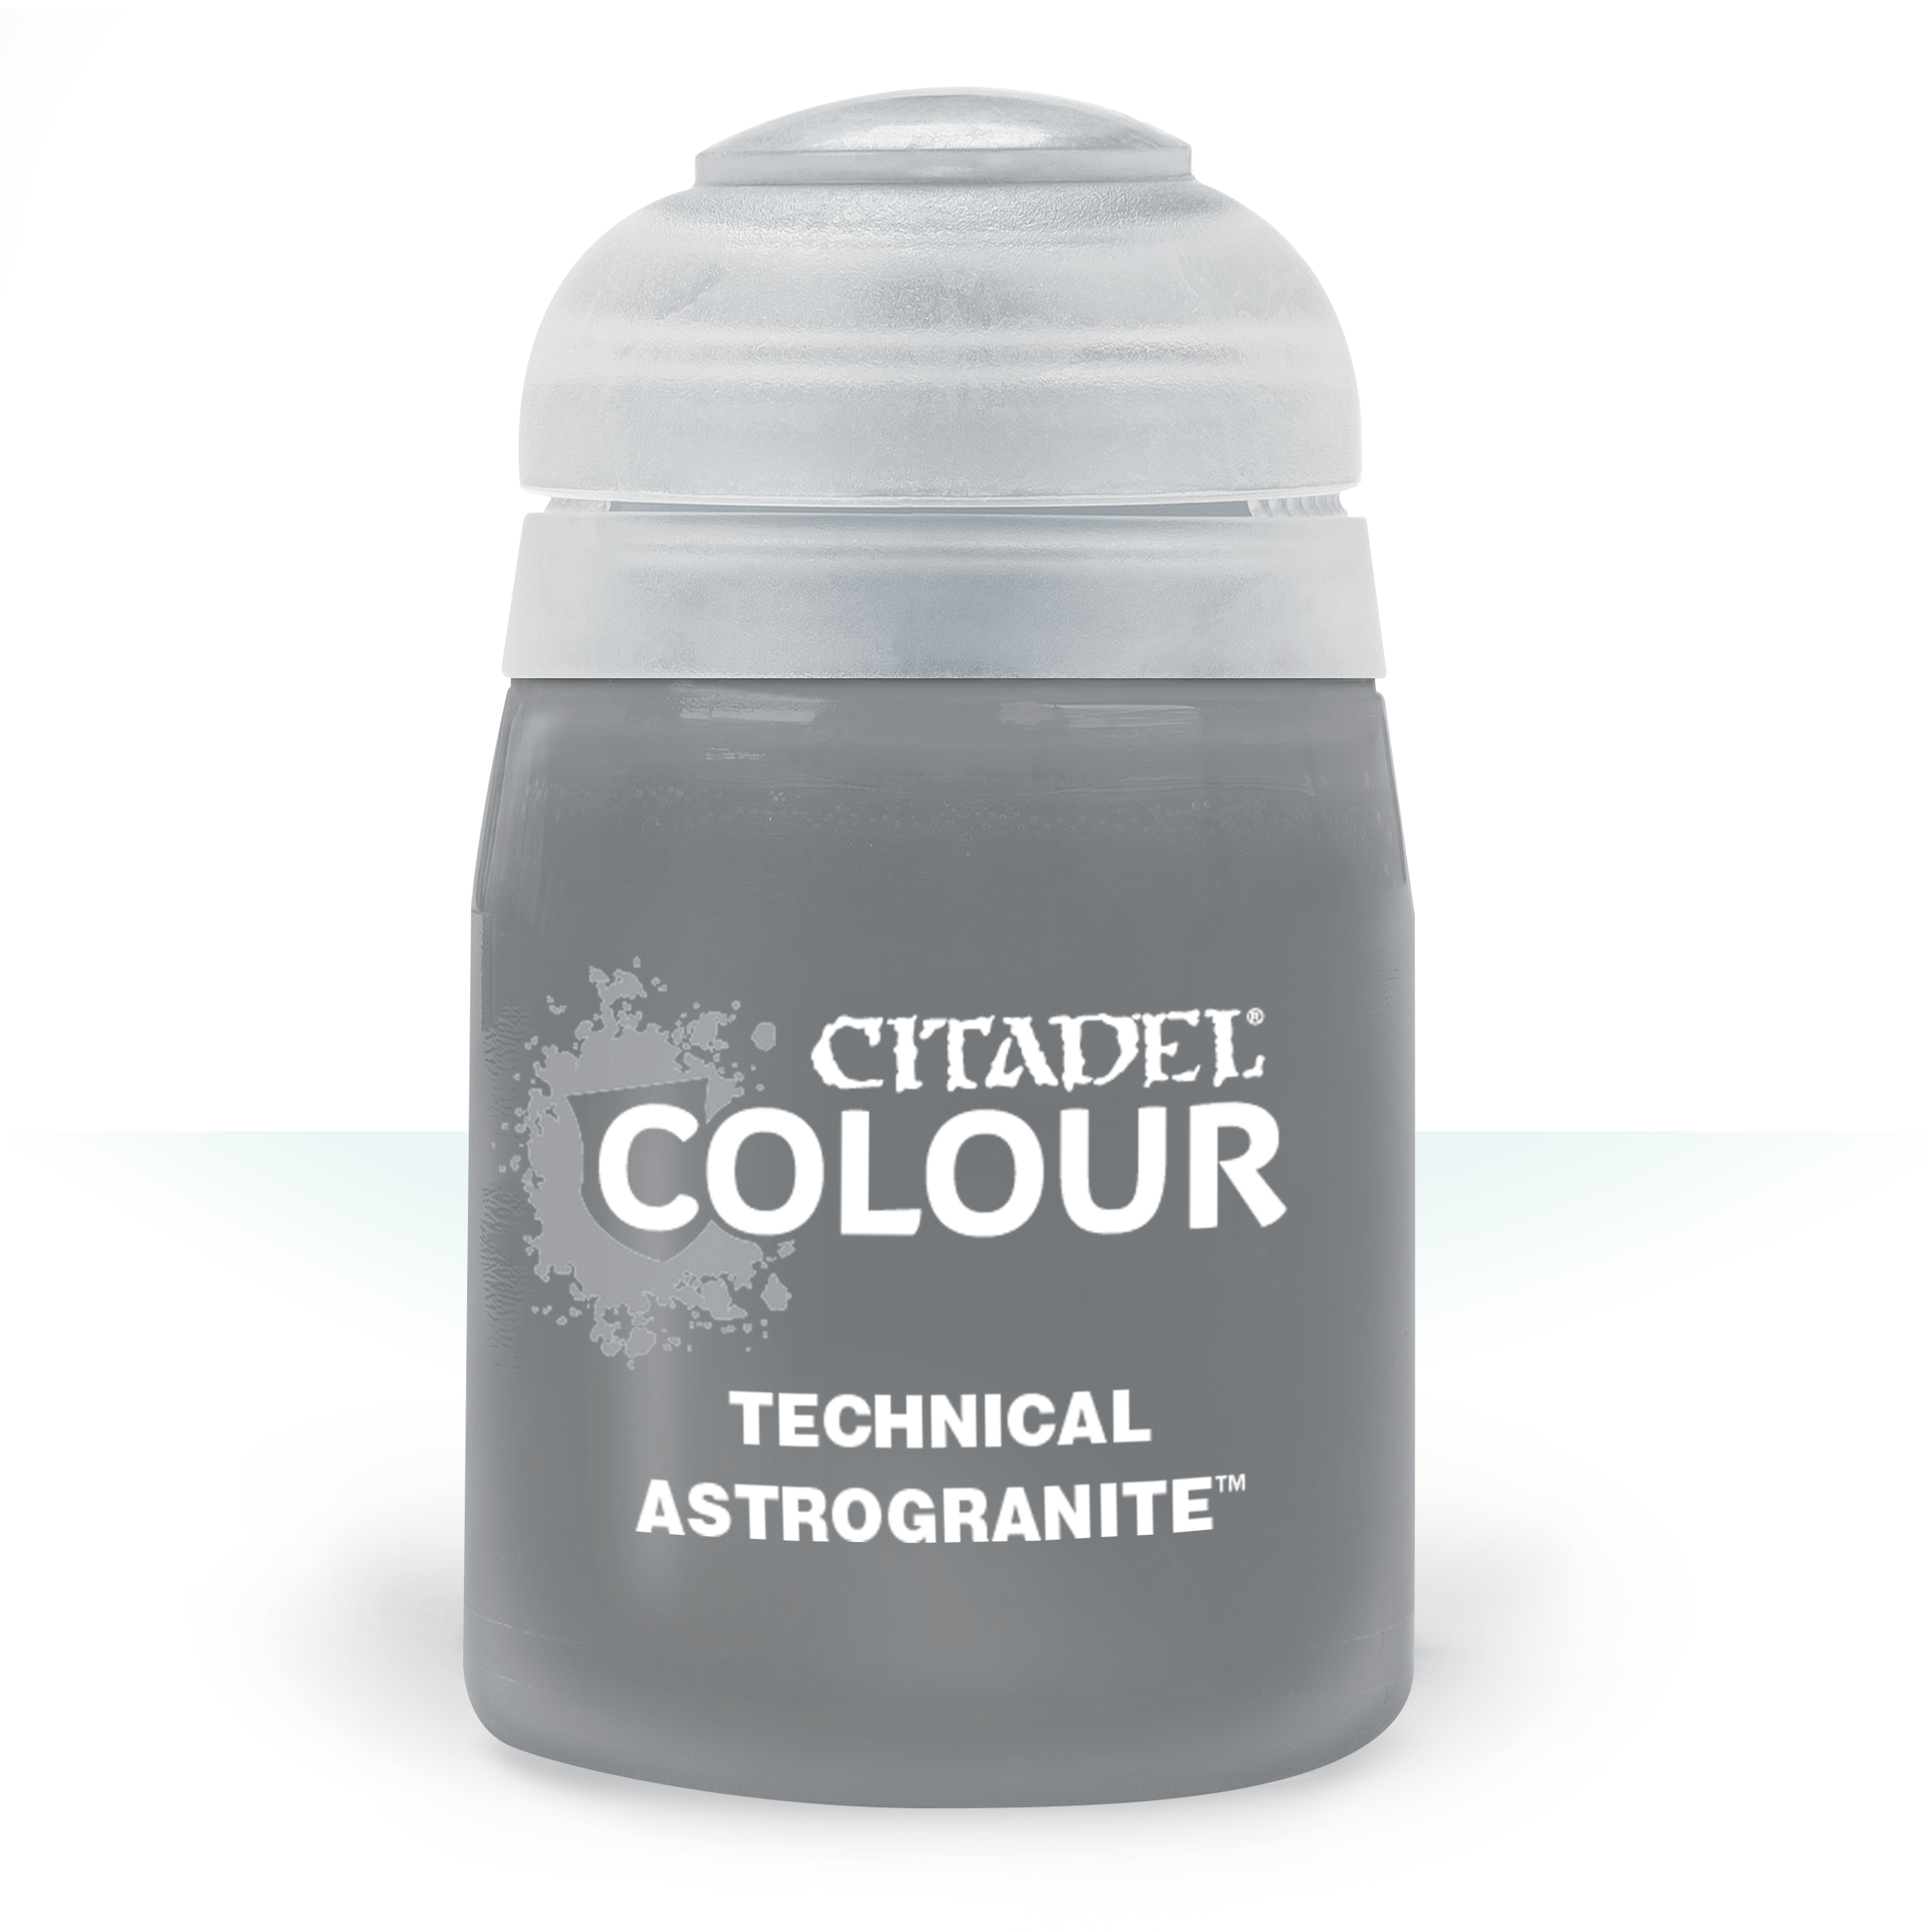 Technical Astrogranite - Citadel Colour